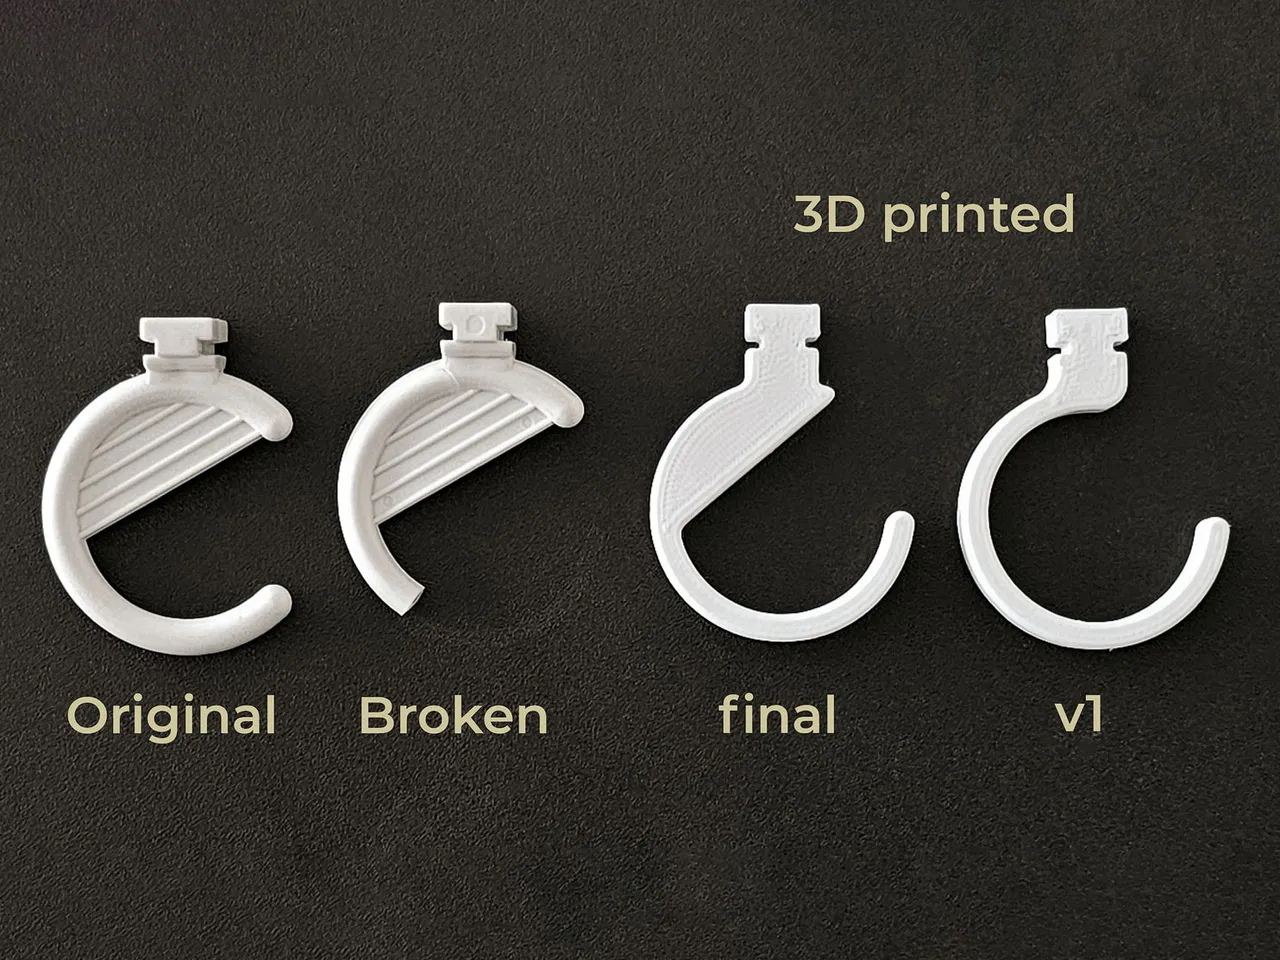 Hook for earring free 3D model 3D printable